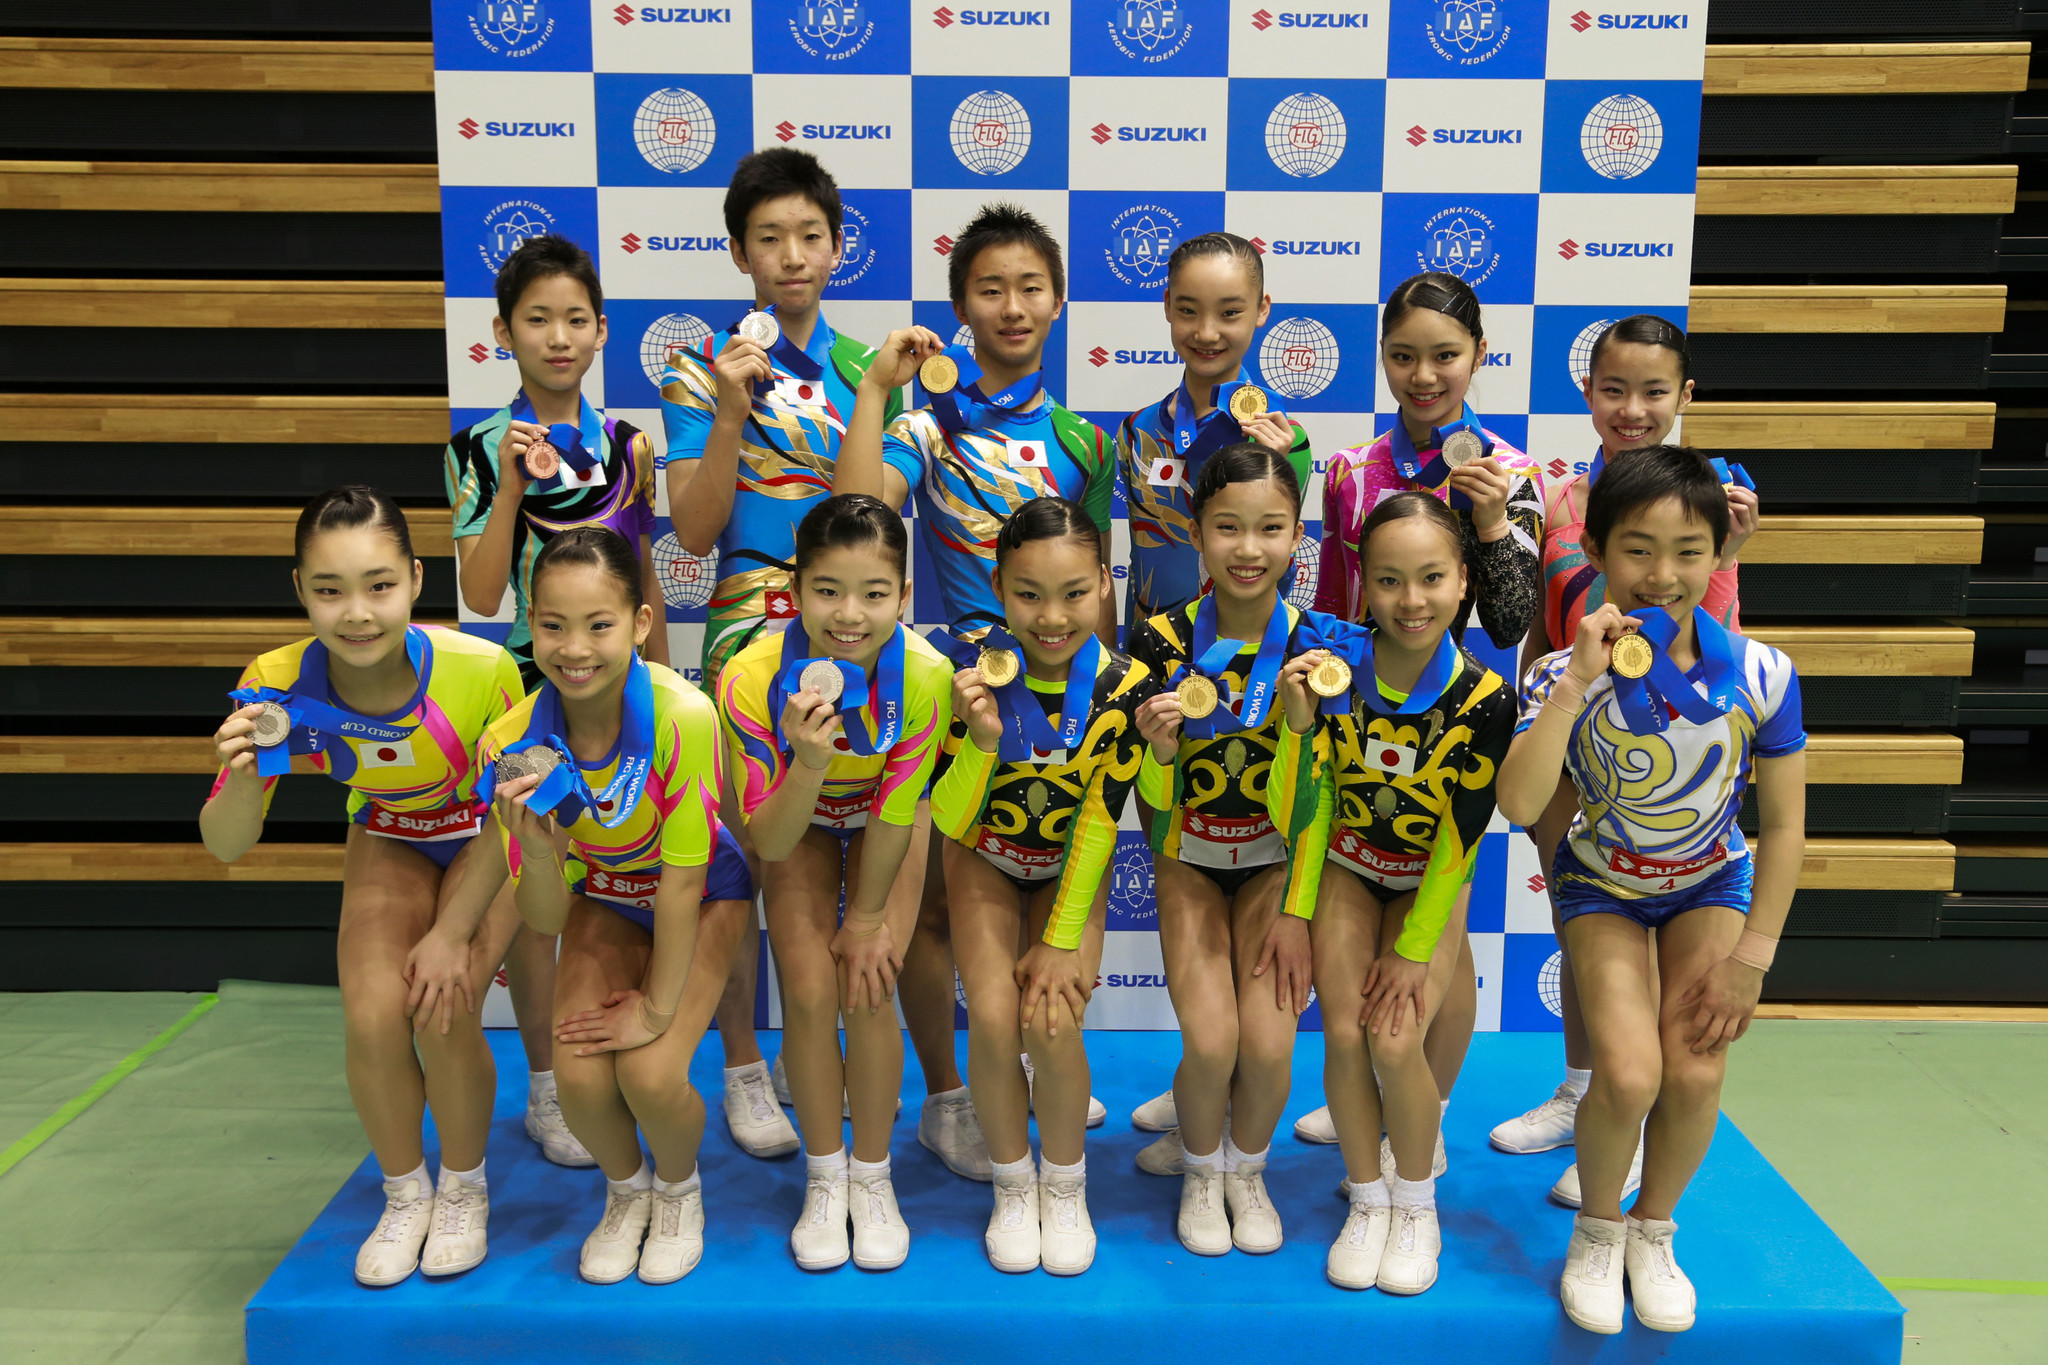 日本代表選手がユースの部で金メダルを独占 スズキワールドカップ13 第24回世界エアロビック選手権大会 大会結果速報 社団法人日本エアロビック連盟のプレスリリース